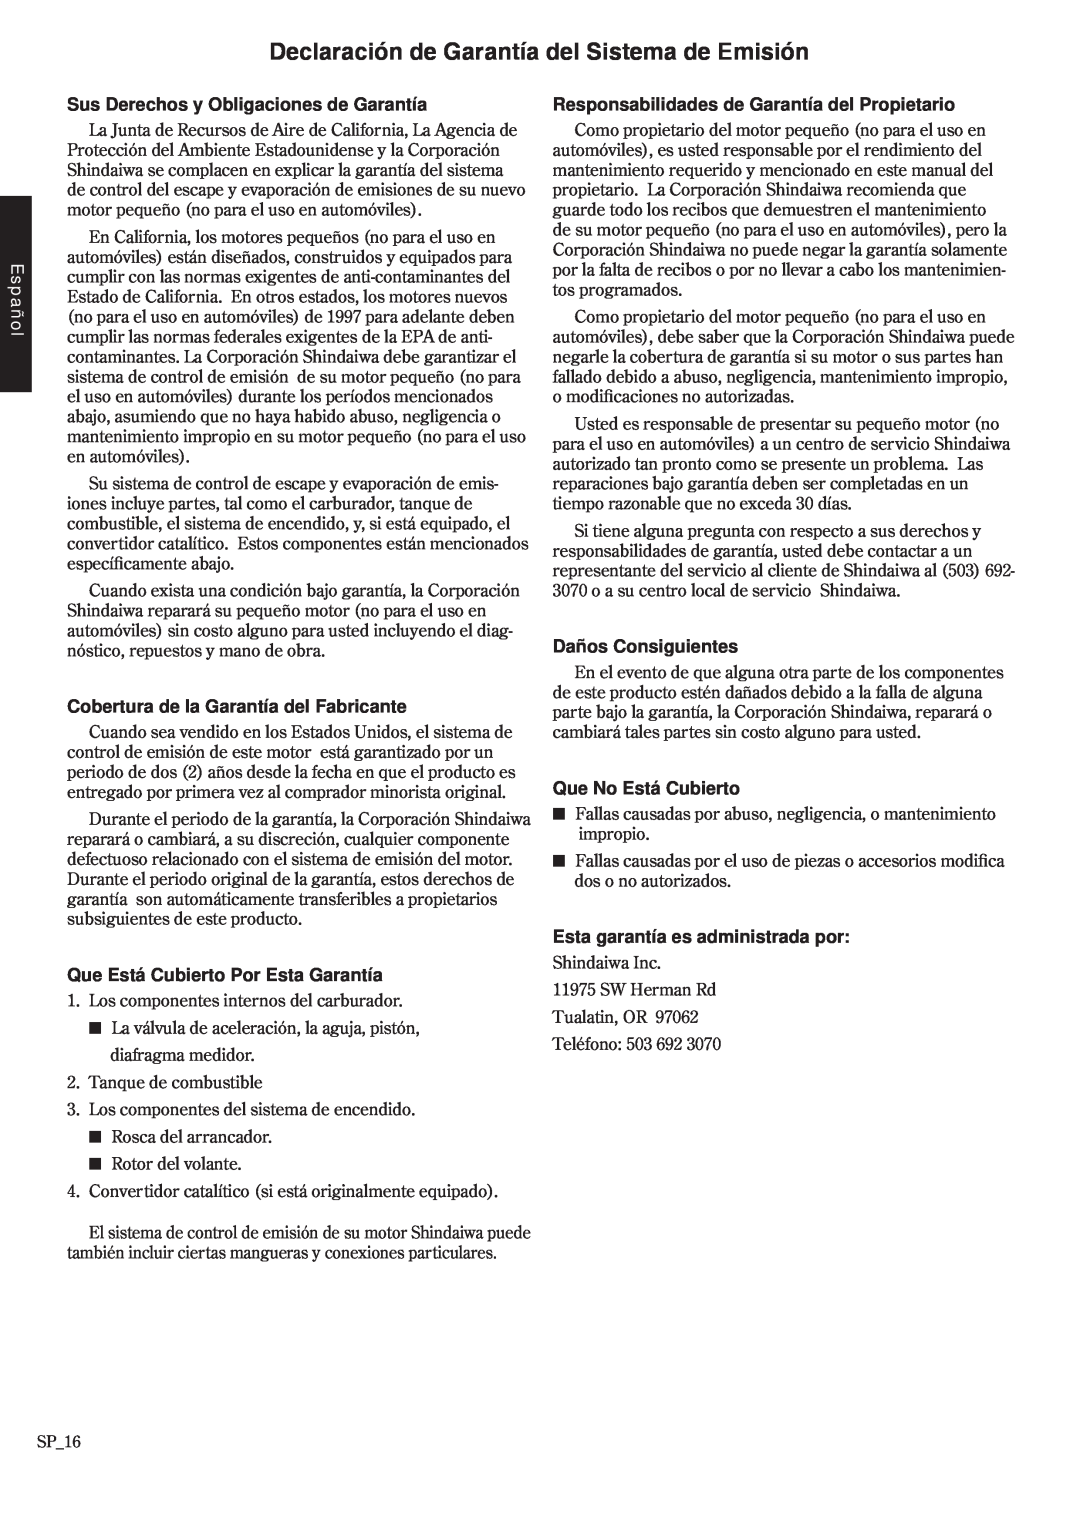 Shindaiwa 68907-94311, EB3410 Sus Derechos y Obligaciones de Garantía, Cobertura de la Garantía del Fabricante, Español 